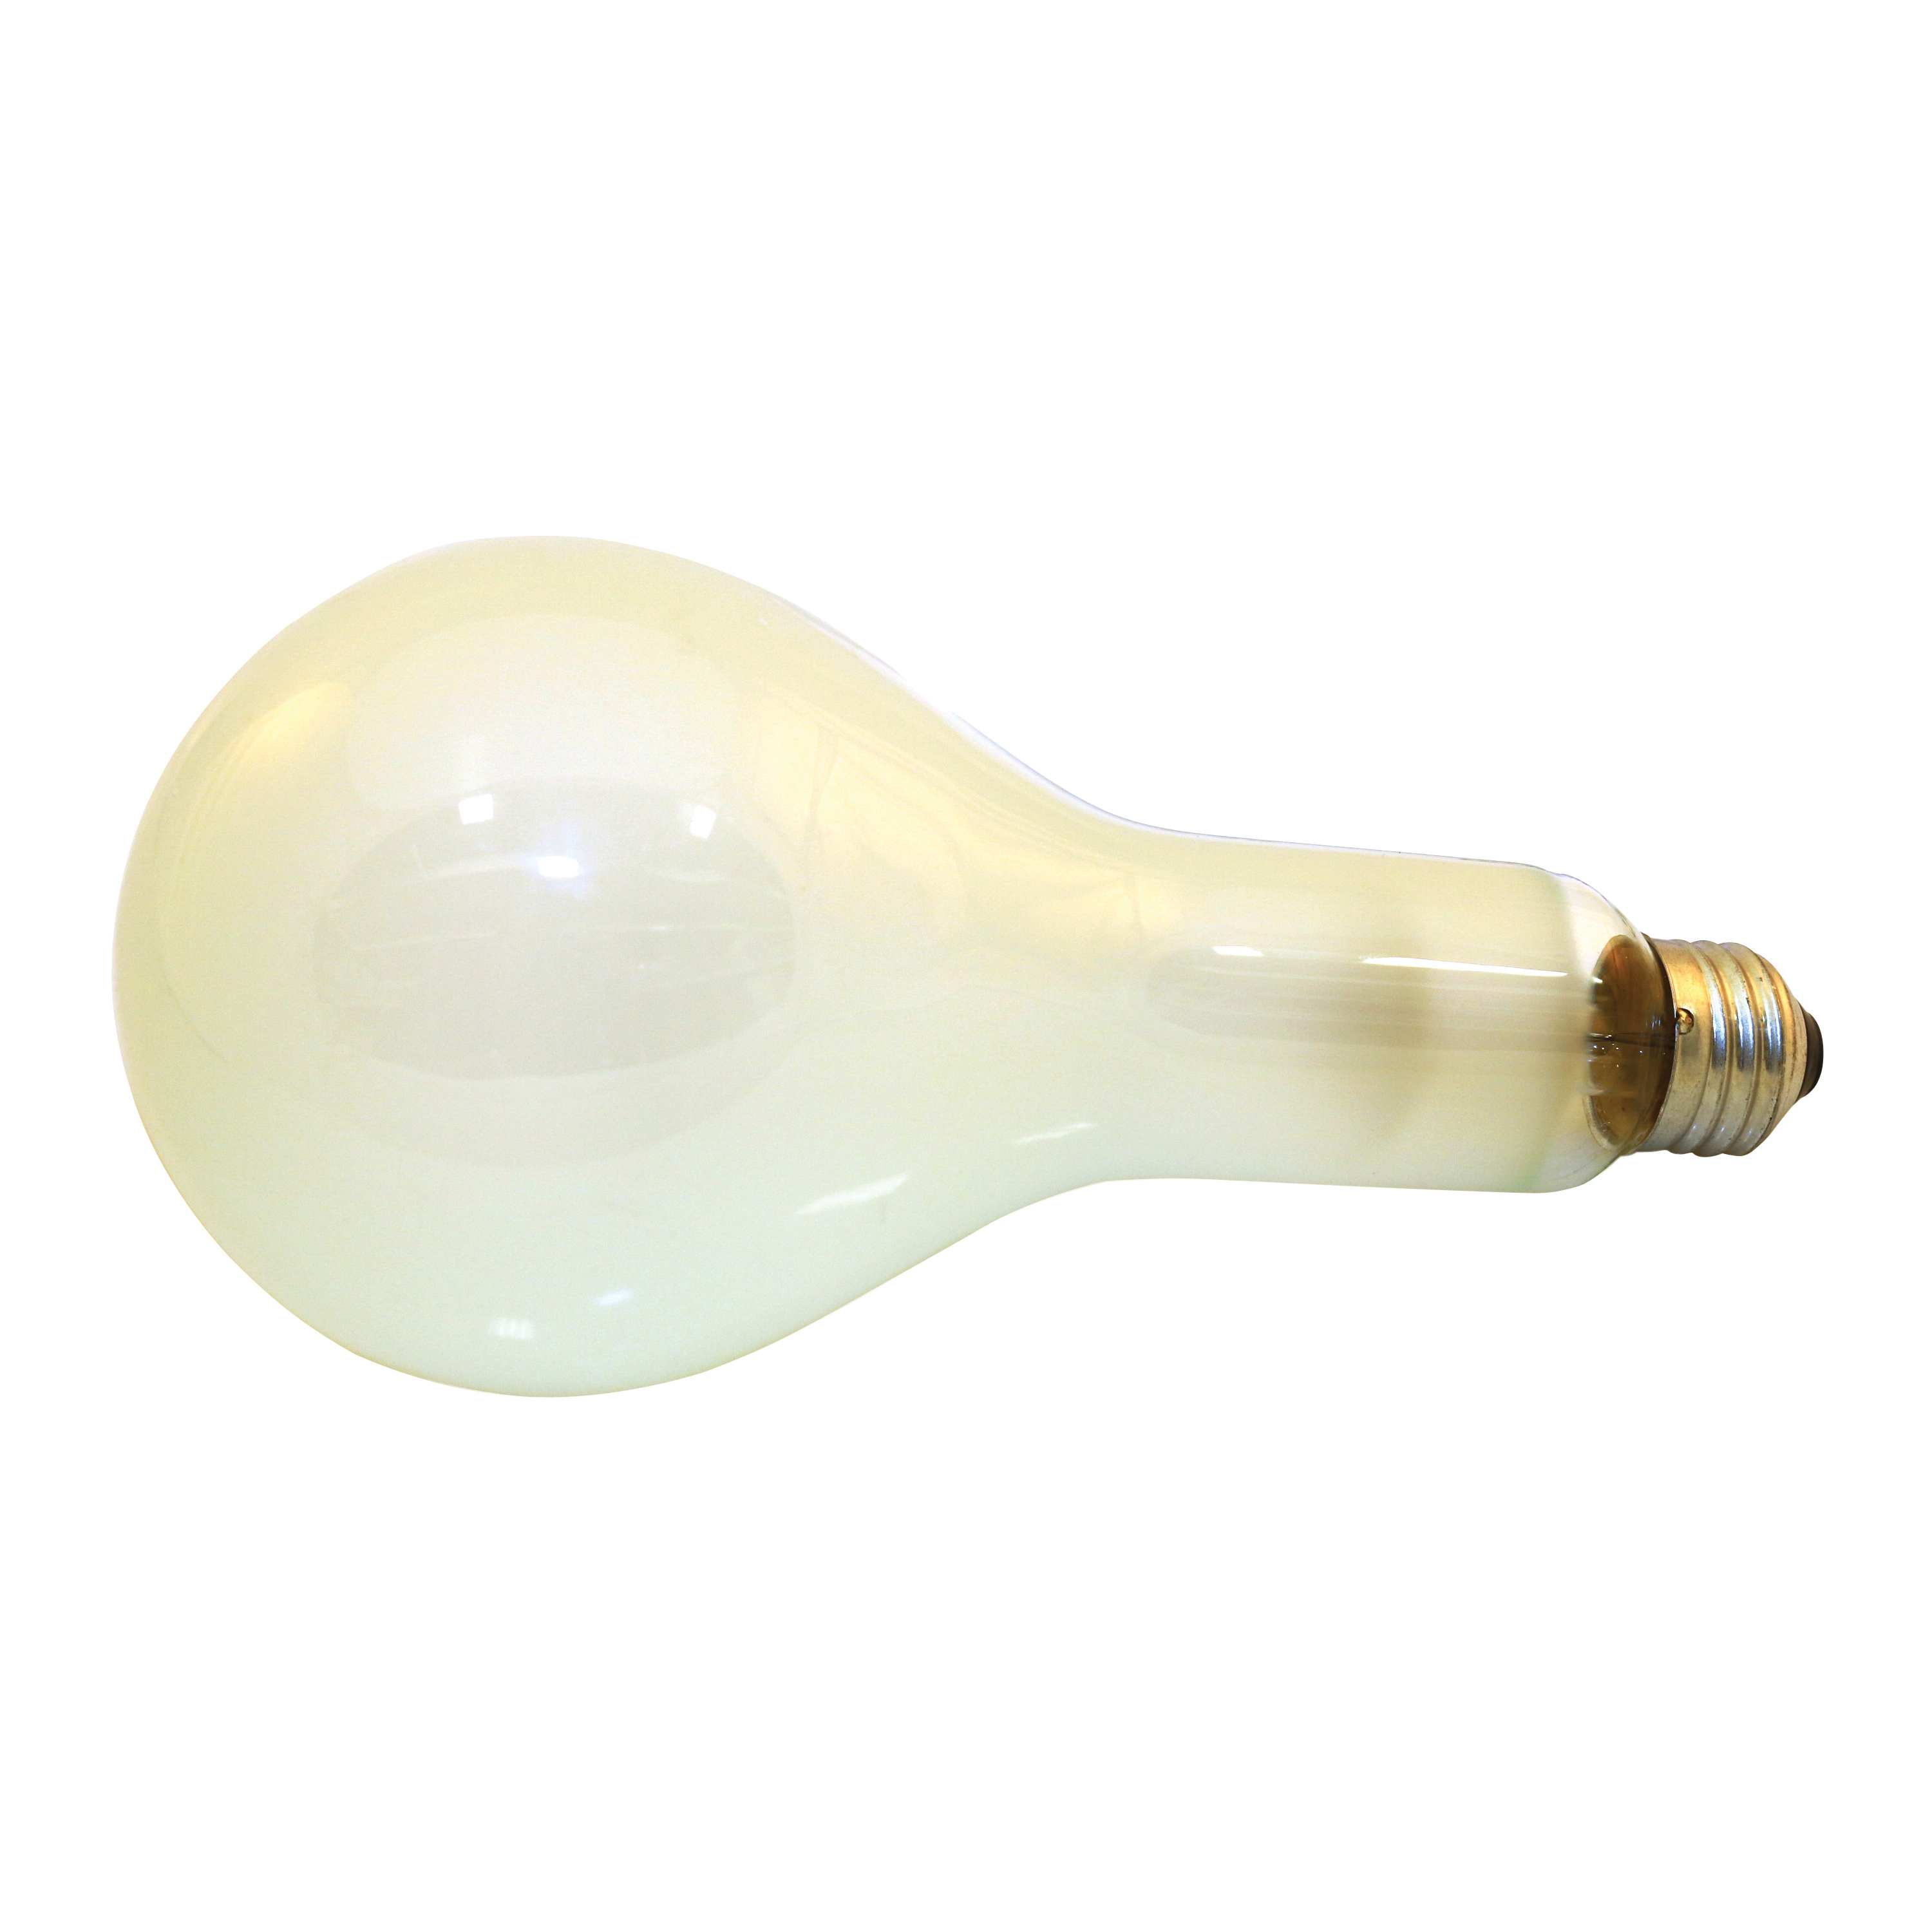 15738 Incandescent Lamp, 300 W, PS30 Lamp, Medium Lamp Base, 5760 Lumens, 2850 K Color Temp